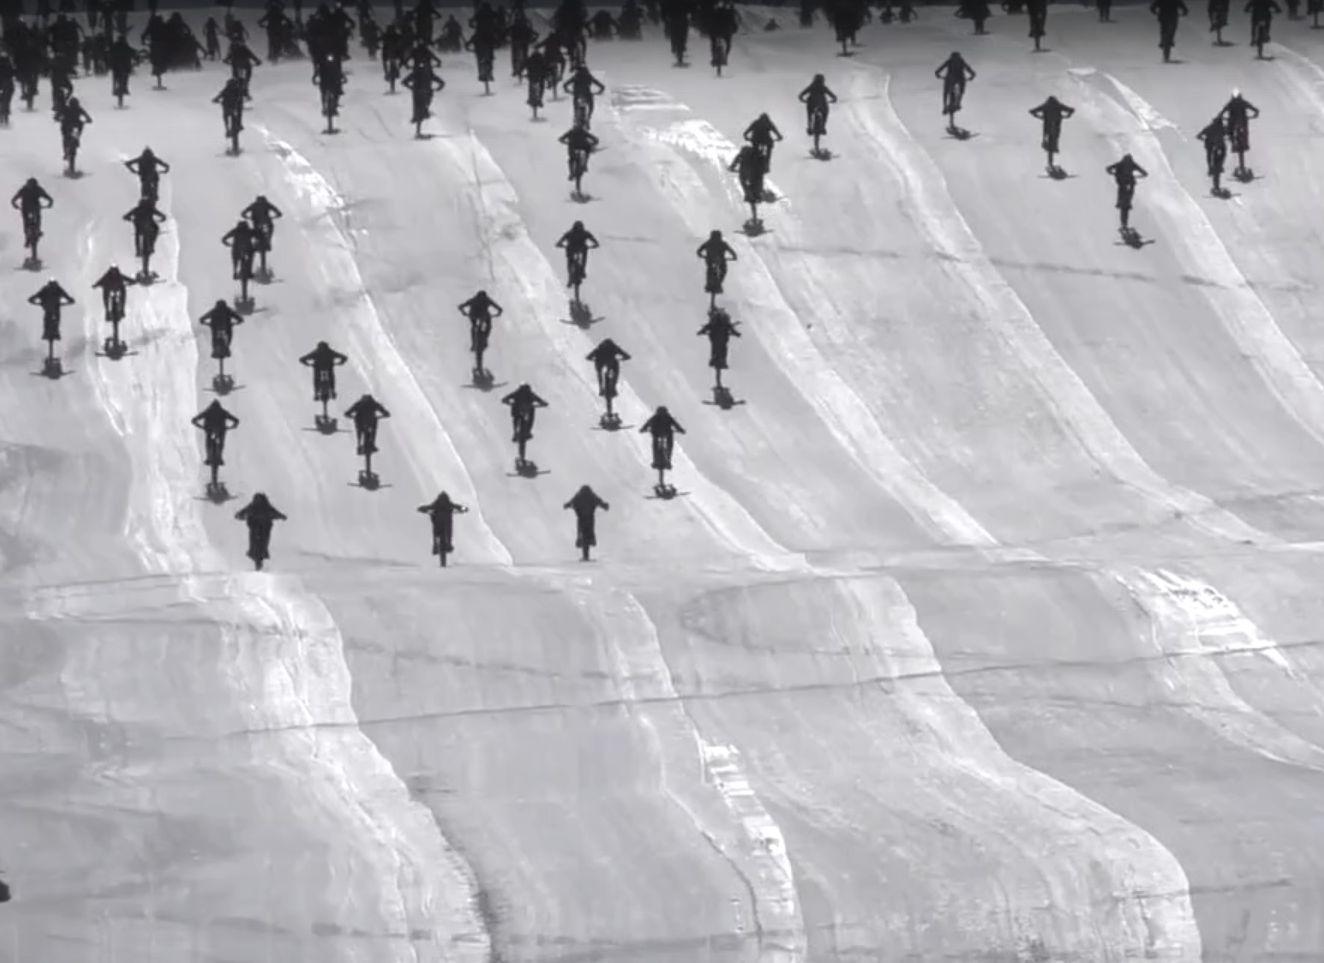 Сотни велосипедистов съехали с Адской горы в Альпах и попали в завал (видео)